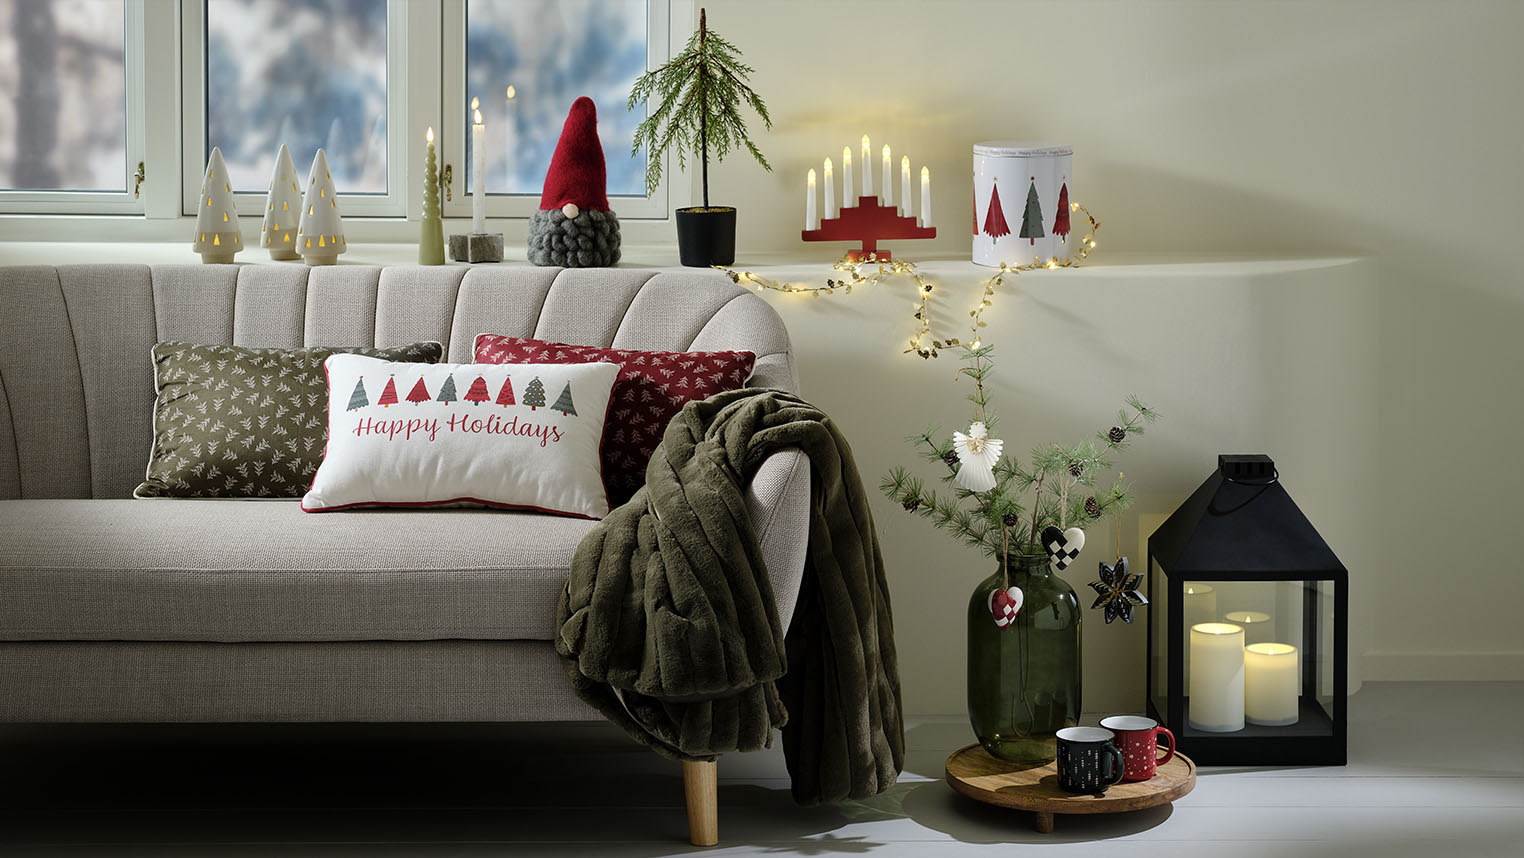 Prijetno okrašena dnevna soba s božičnimi dekoracijami v skandinavskem duhu